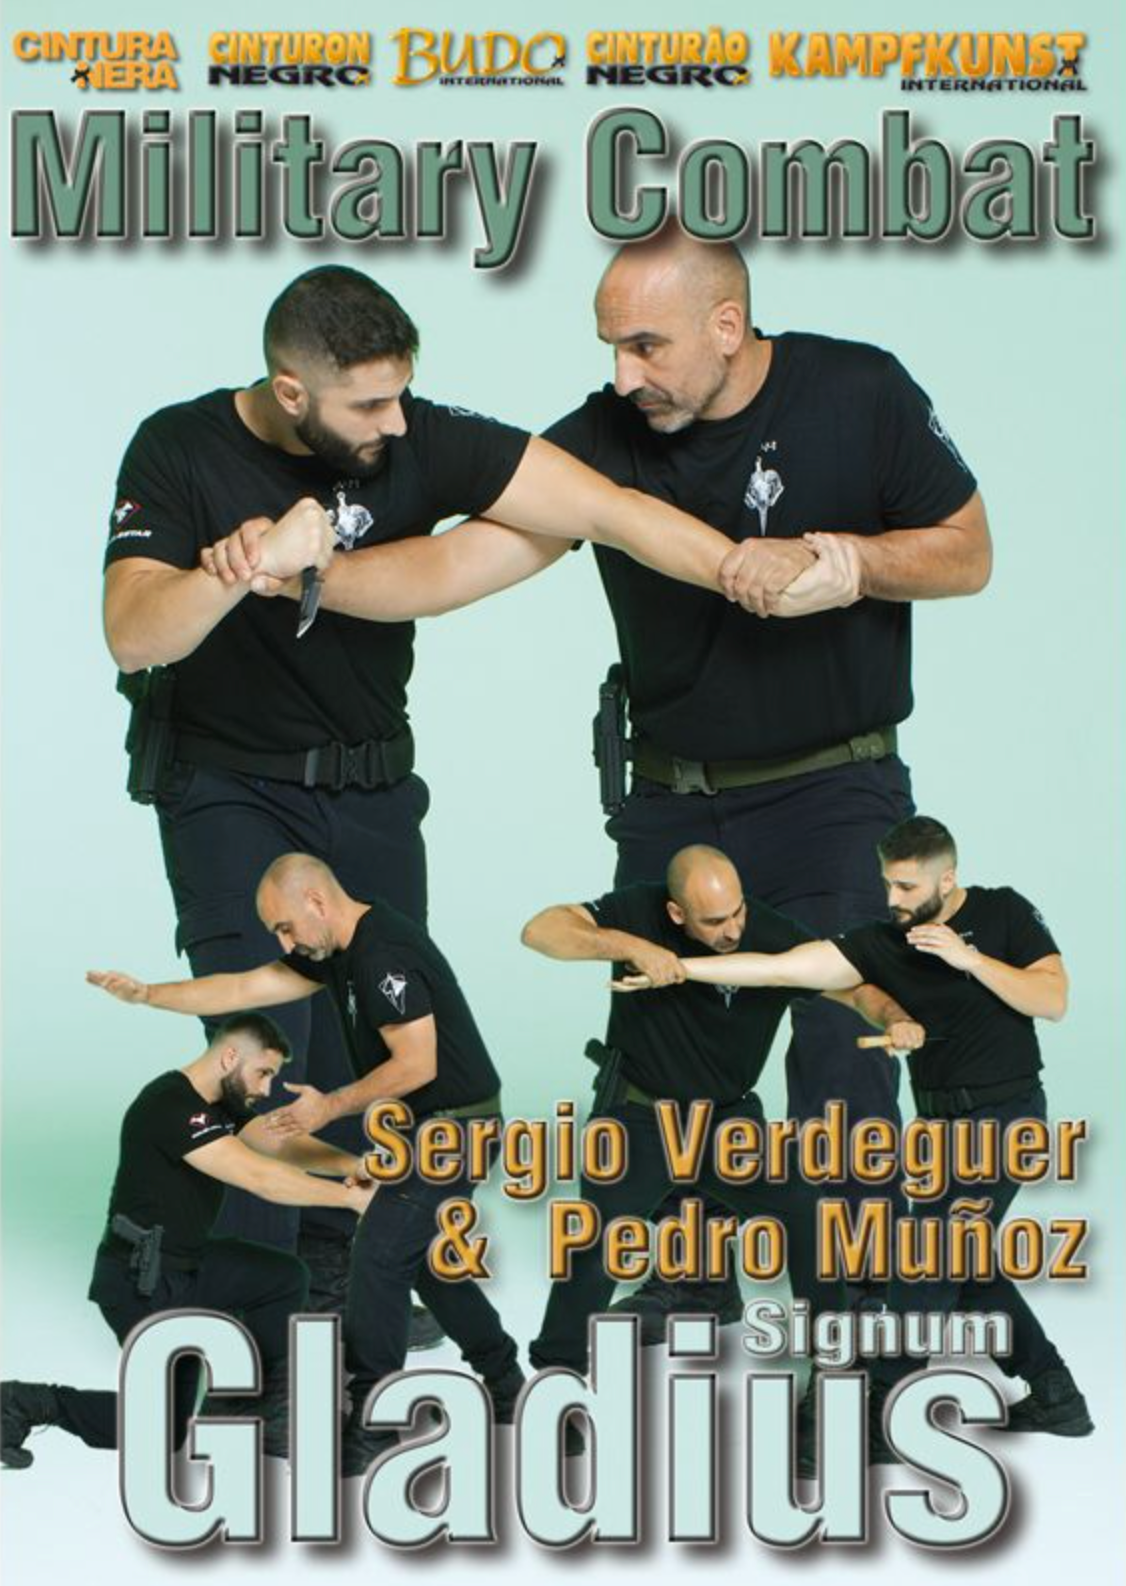 DVD de combate con cuchillo militar Signum Gladius de Sergio Verdeguer